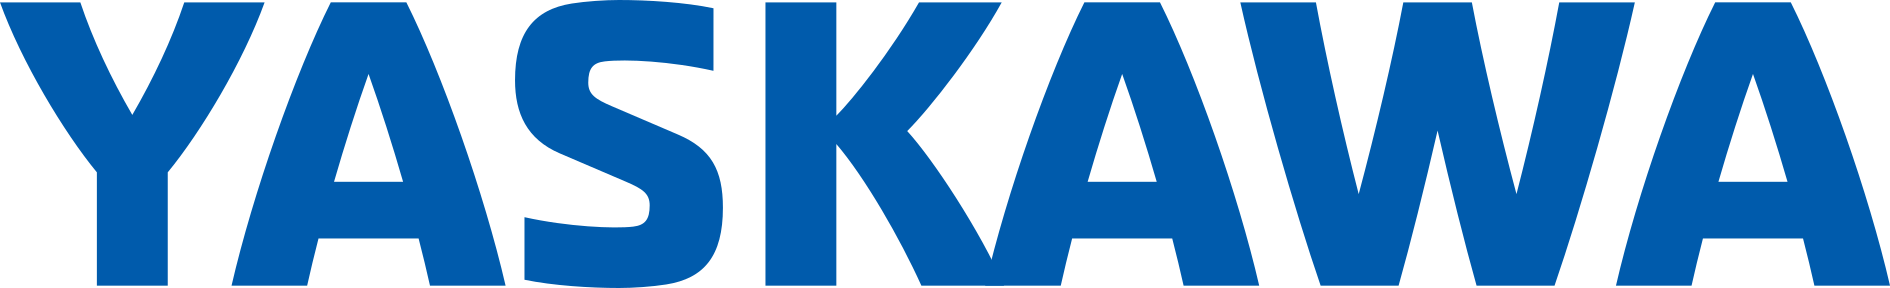 Yaskawa logo blue